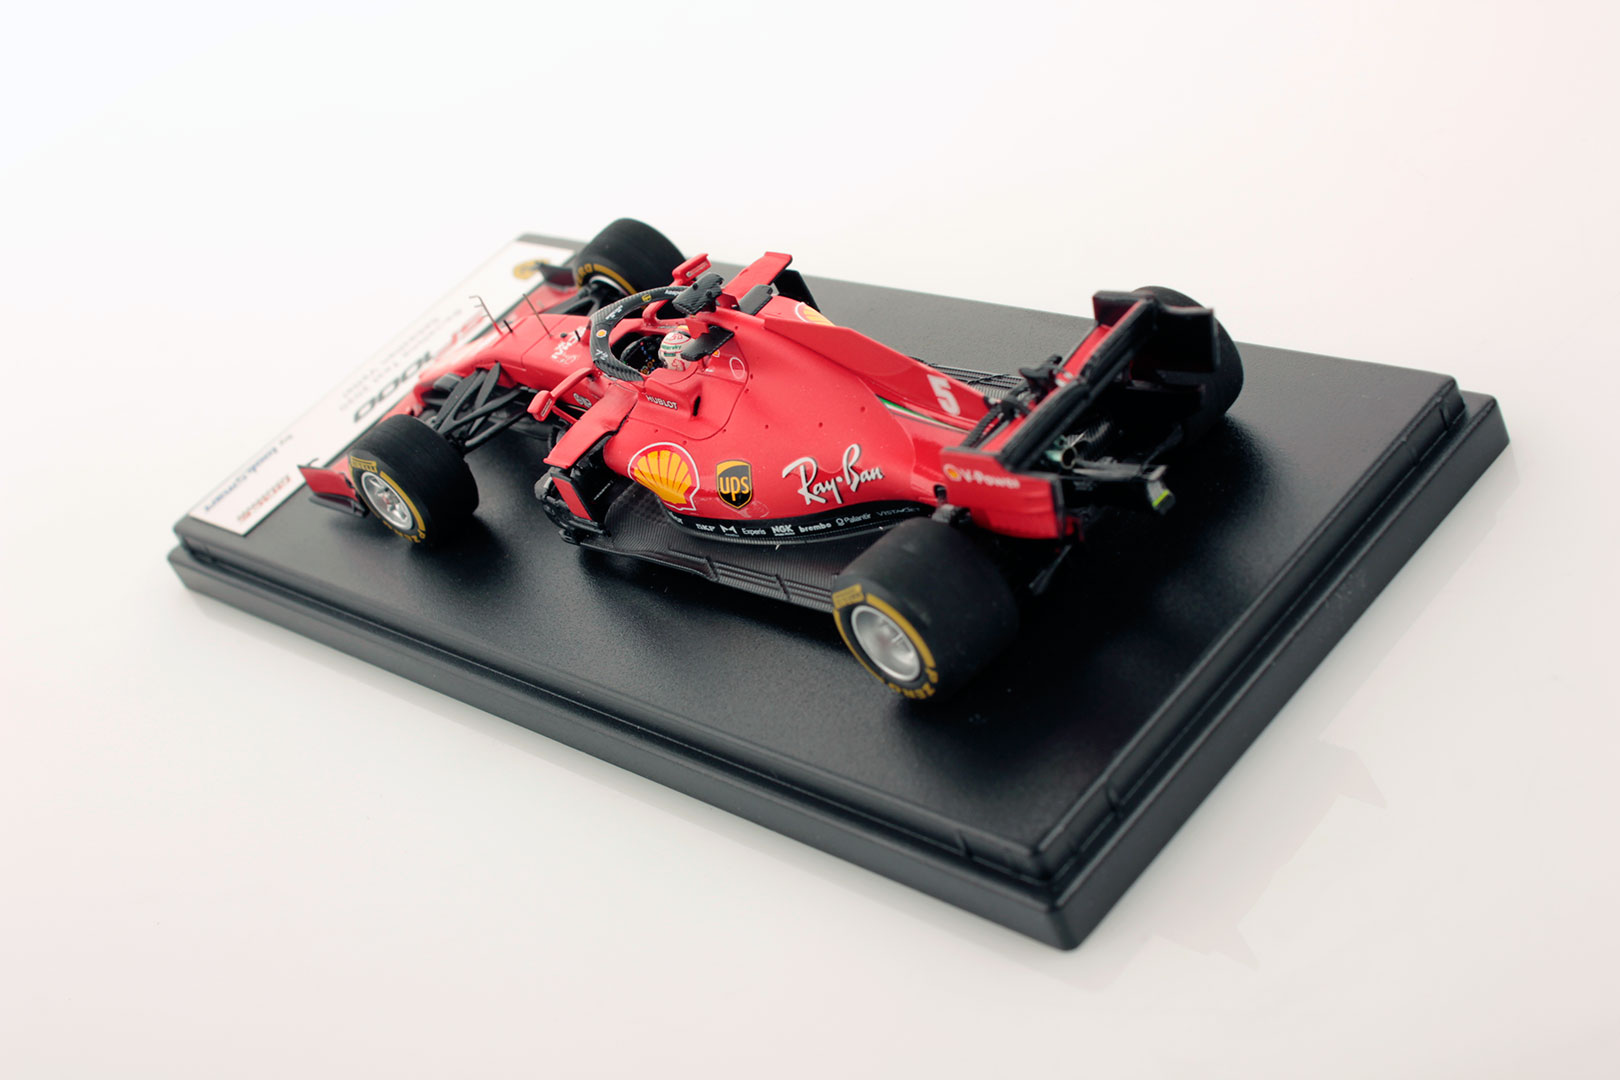 Ferrari SF1000 Barcelona Test 2020 Vettel 1:43 - Looksmart Models